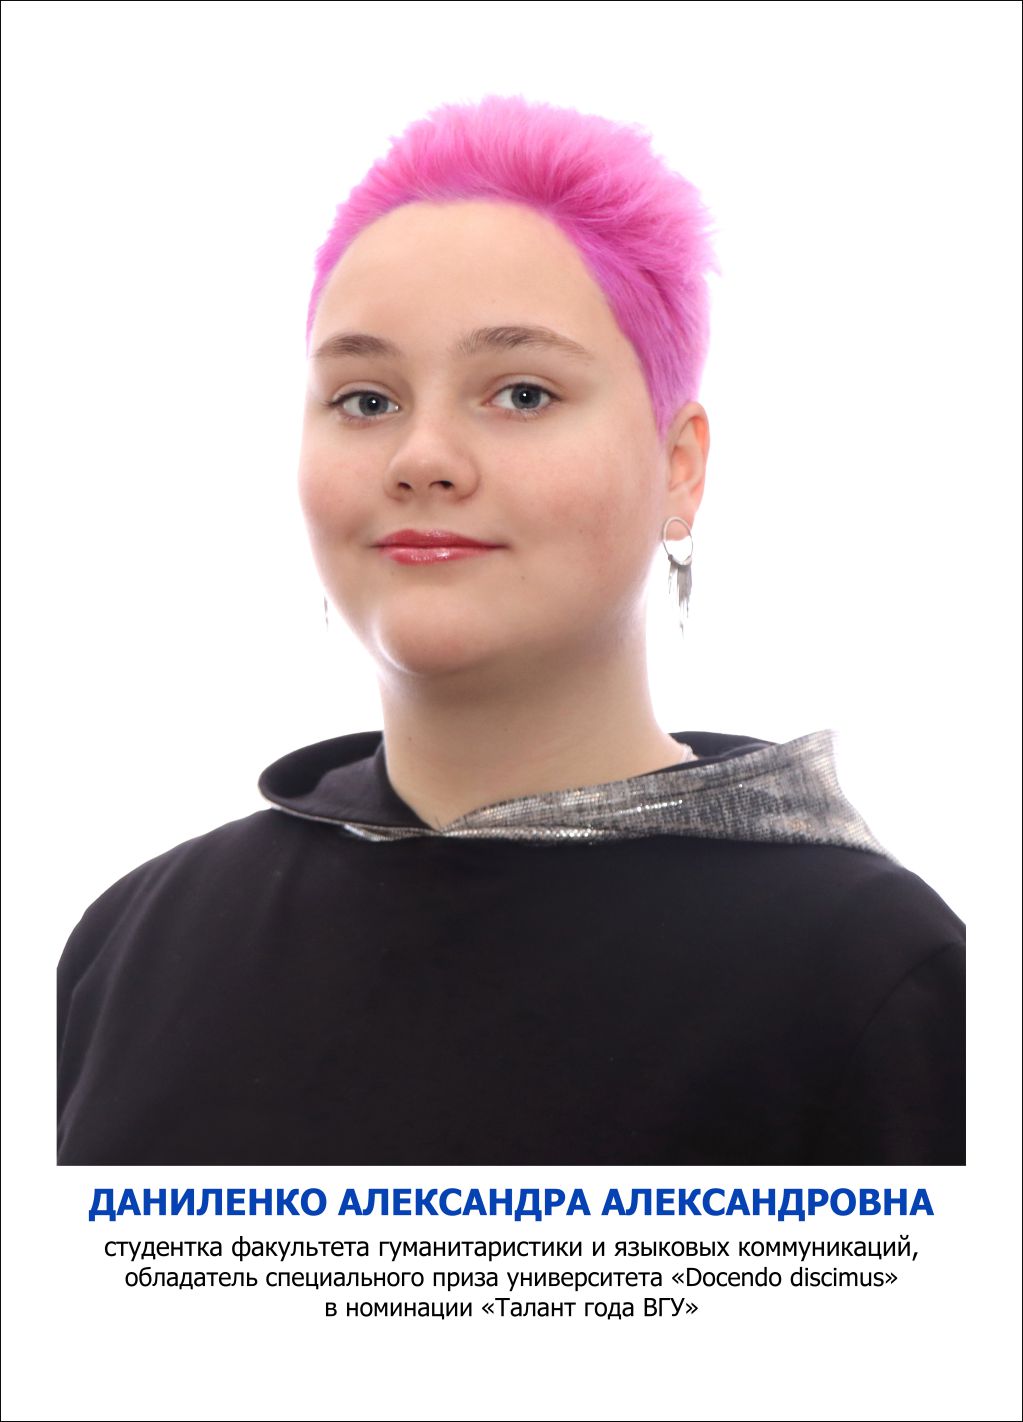 Даниленко Александра Александровна